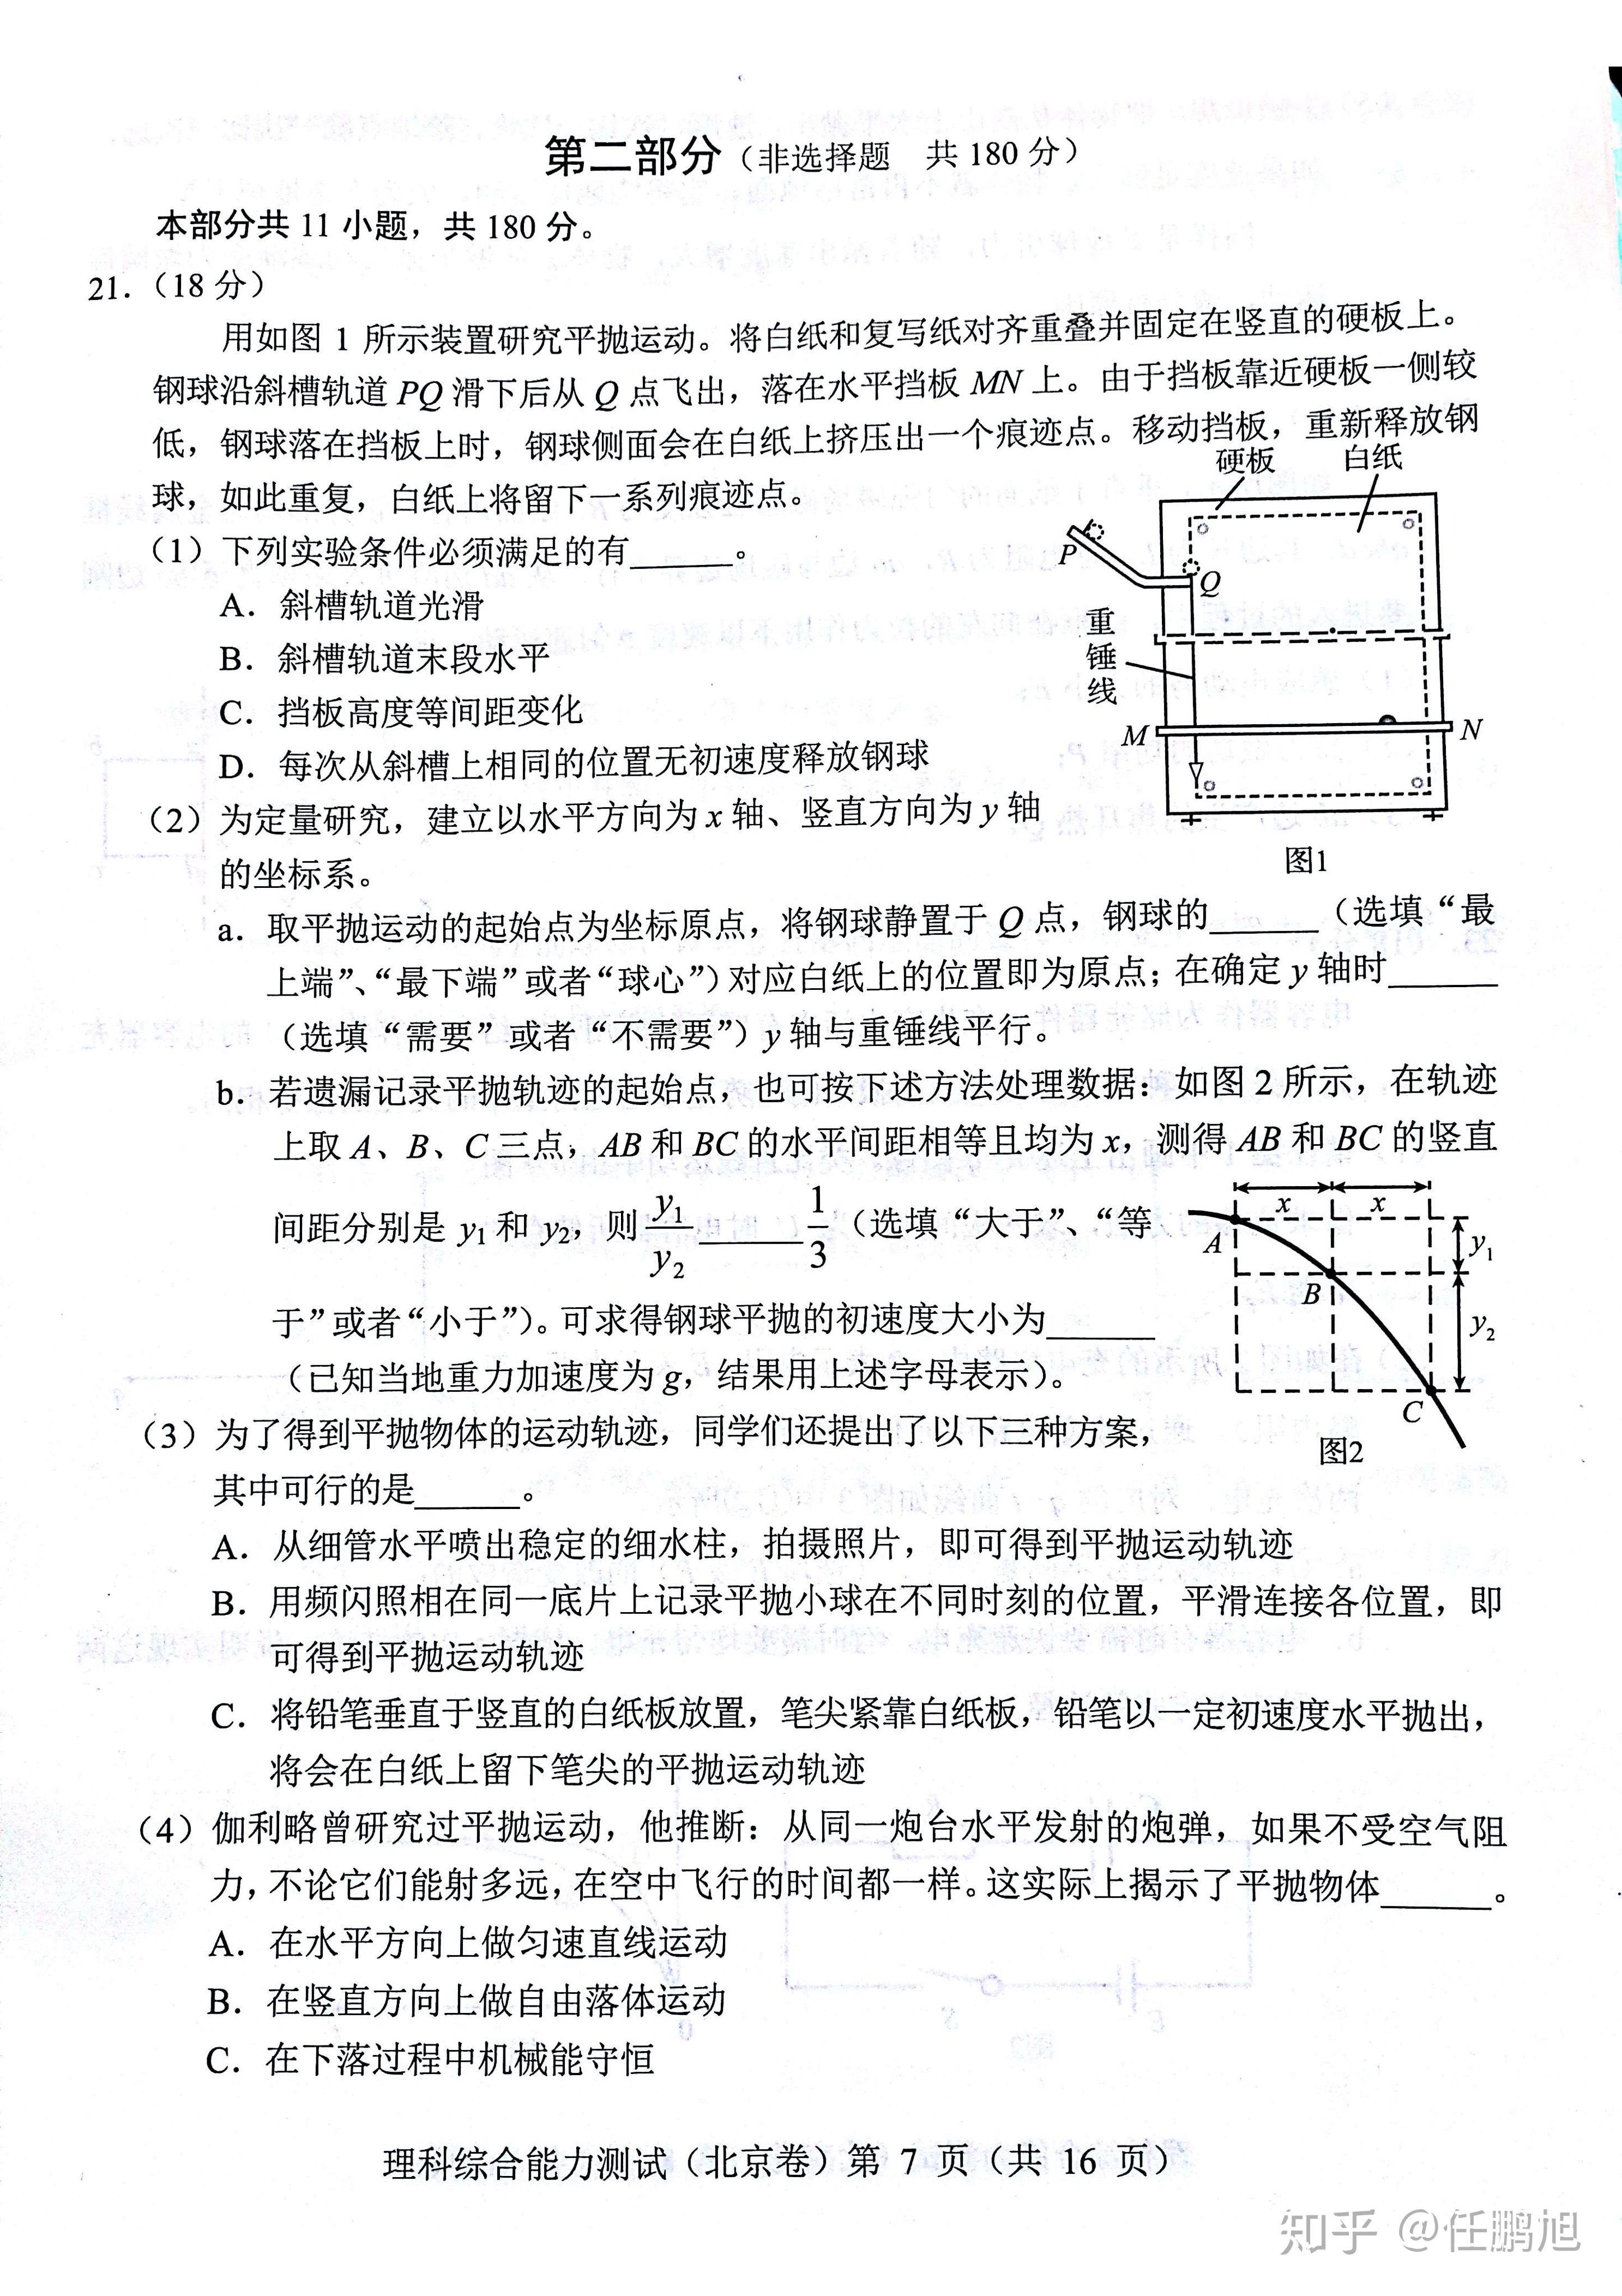 2019年北京高考理综真题物理及理综试卷整体分析